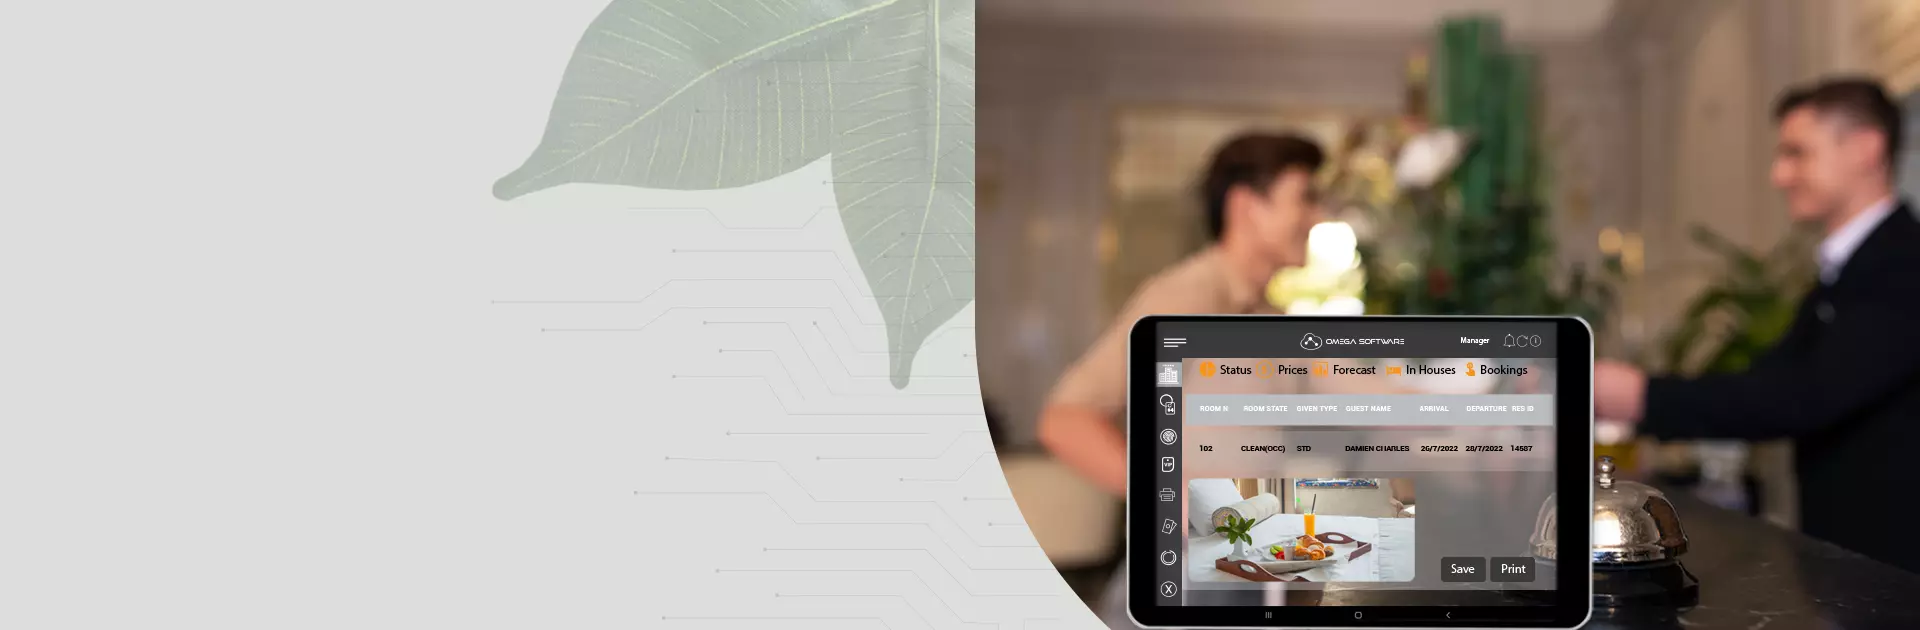 Restaurant Management Software | Omega Software